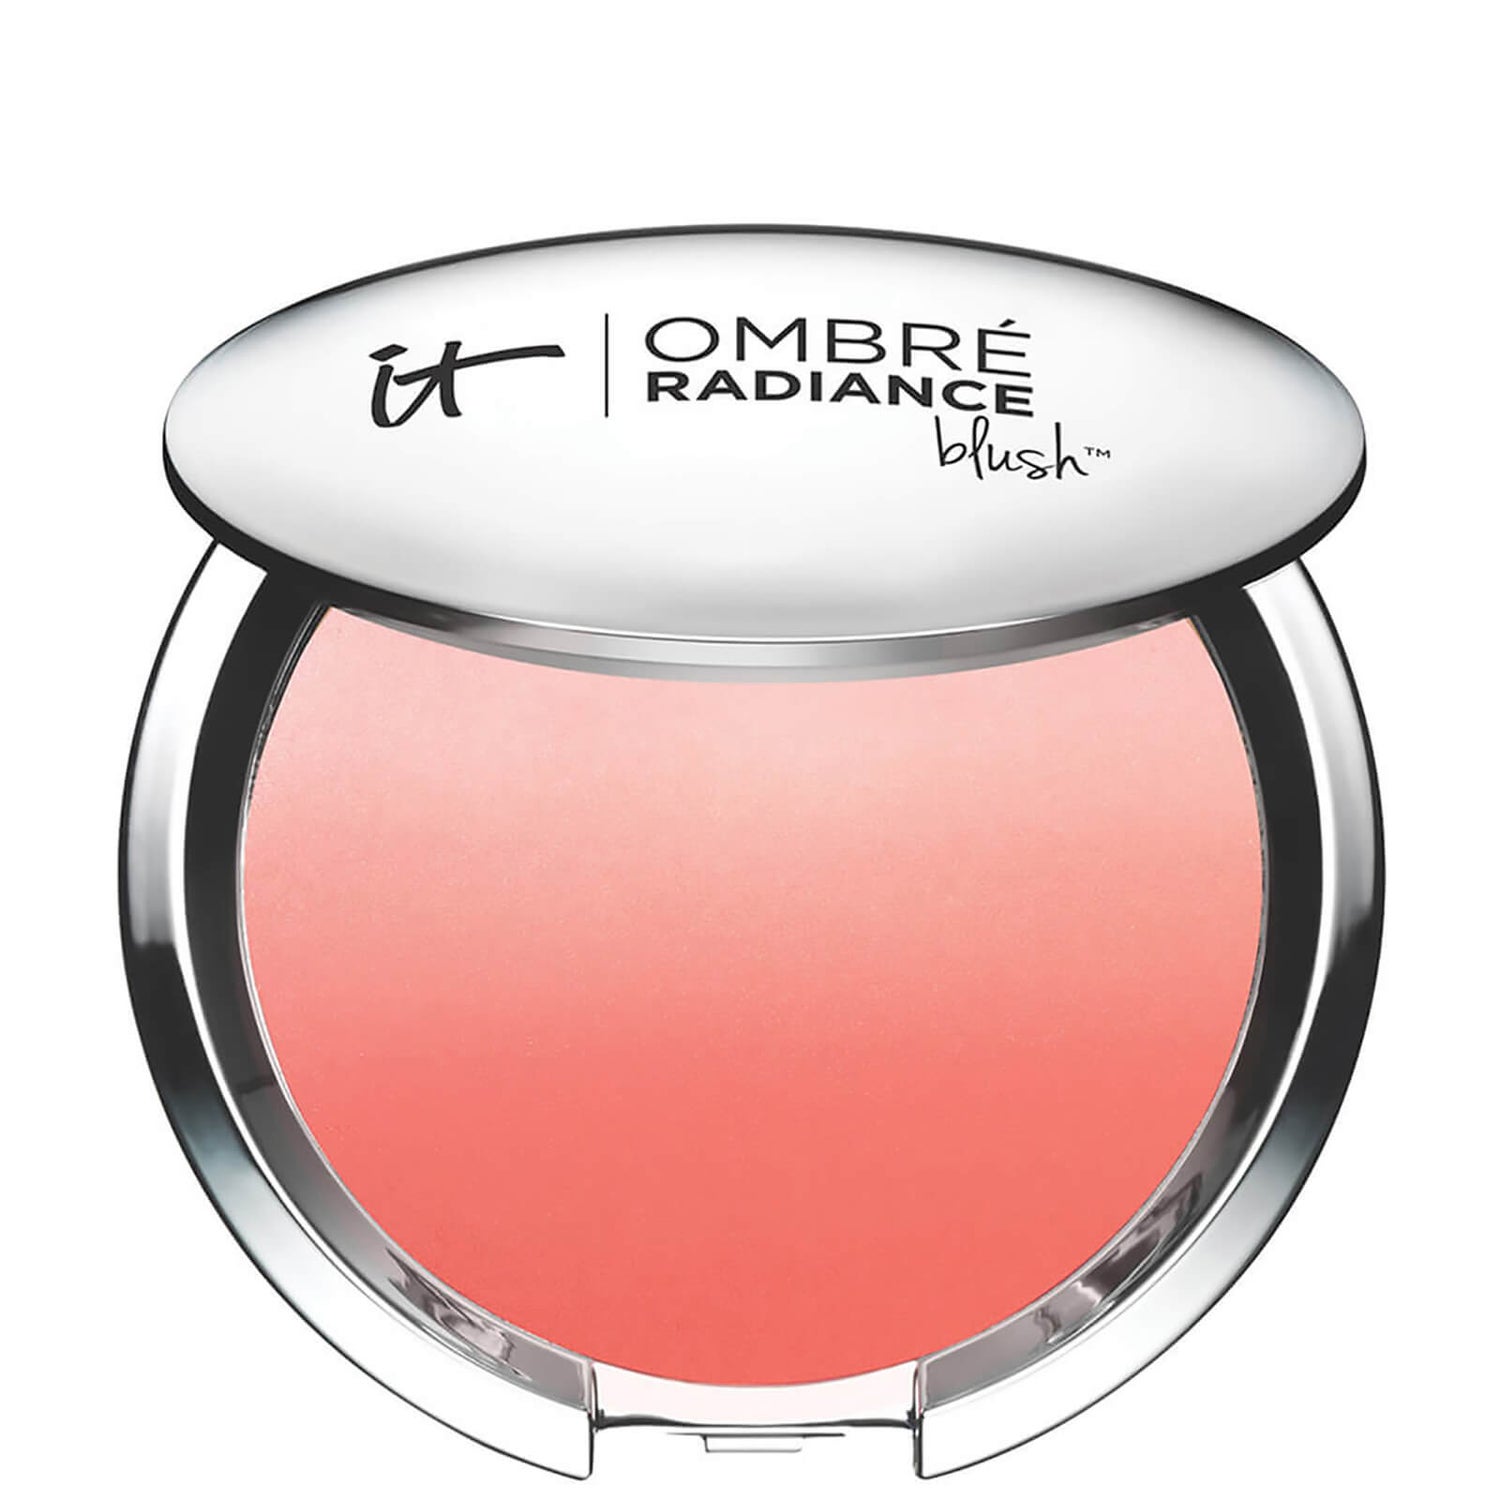 Румяна IT Cosmetics Ombré Radiance Blush, 10,8 г (разные оттенки)